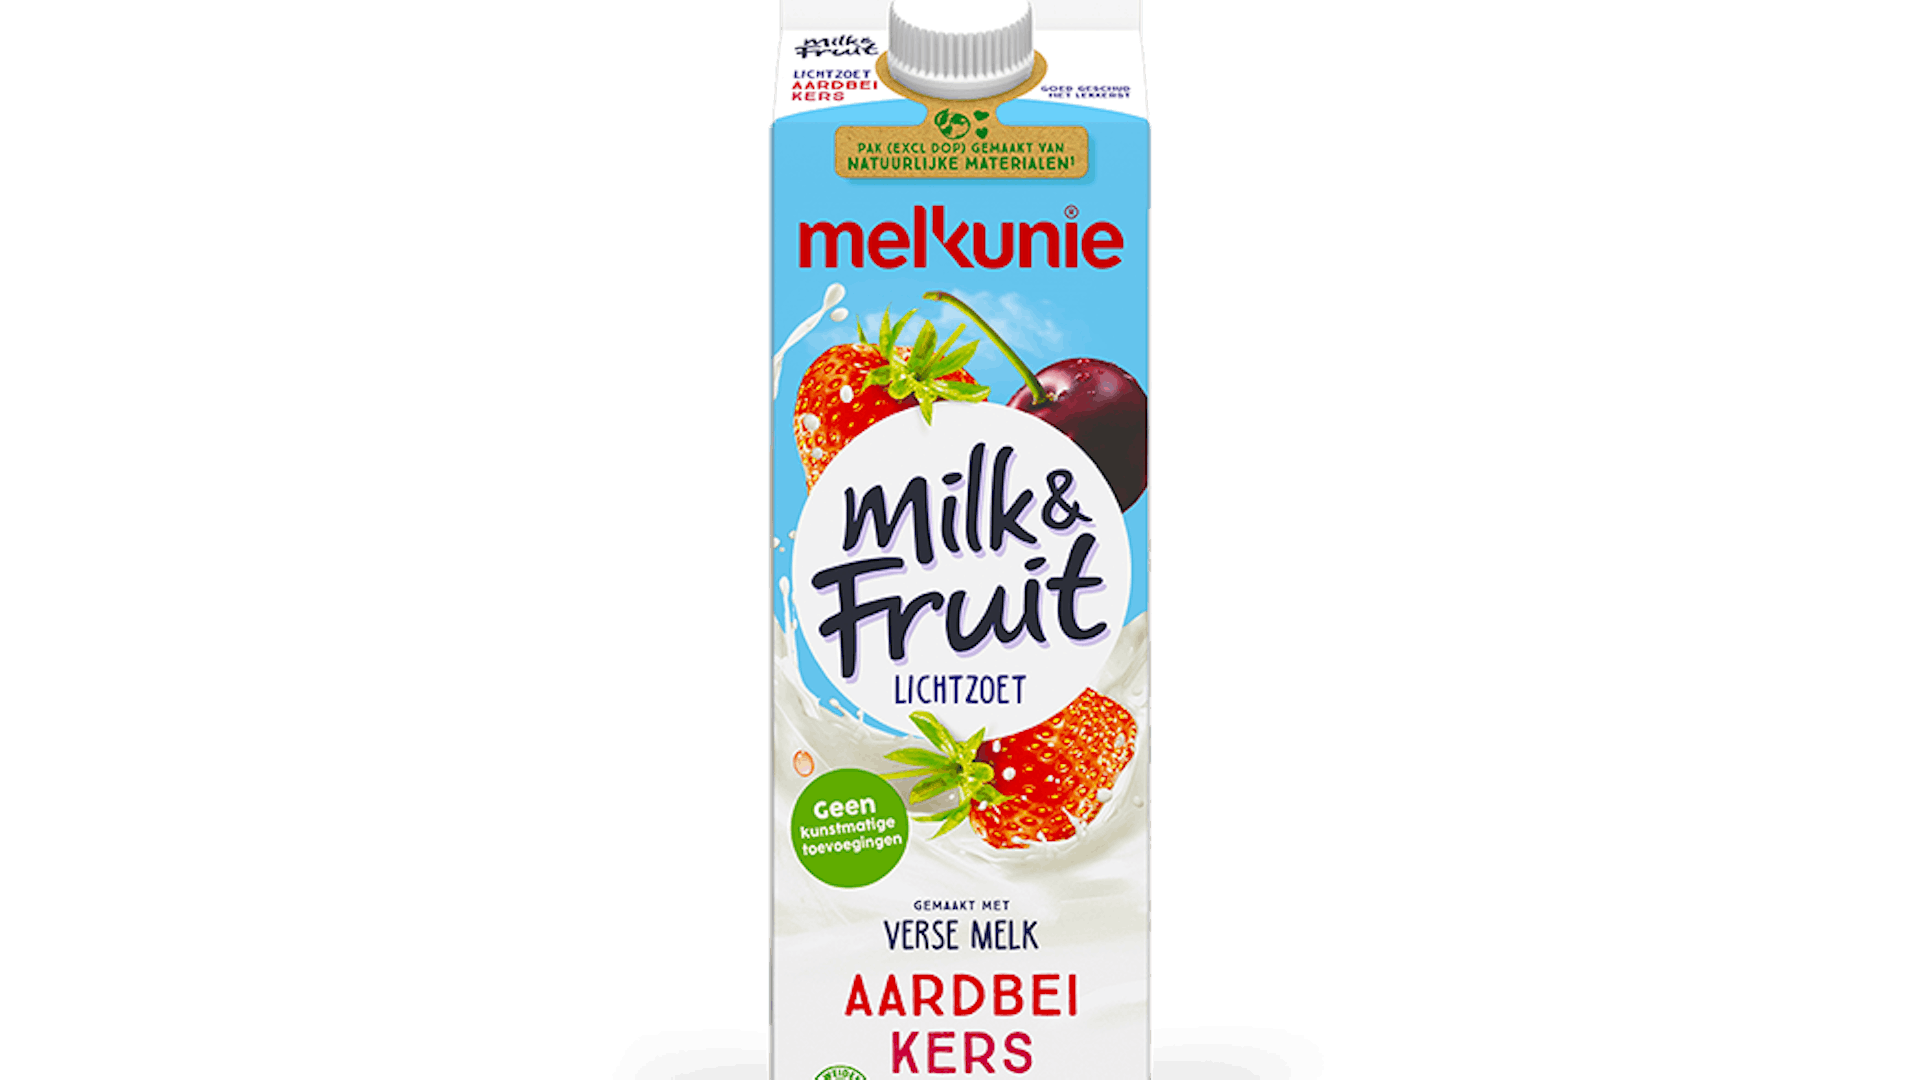 Melkunie milk and fruit aardbei kers verpakking.